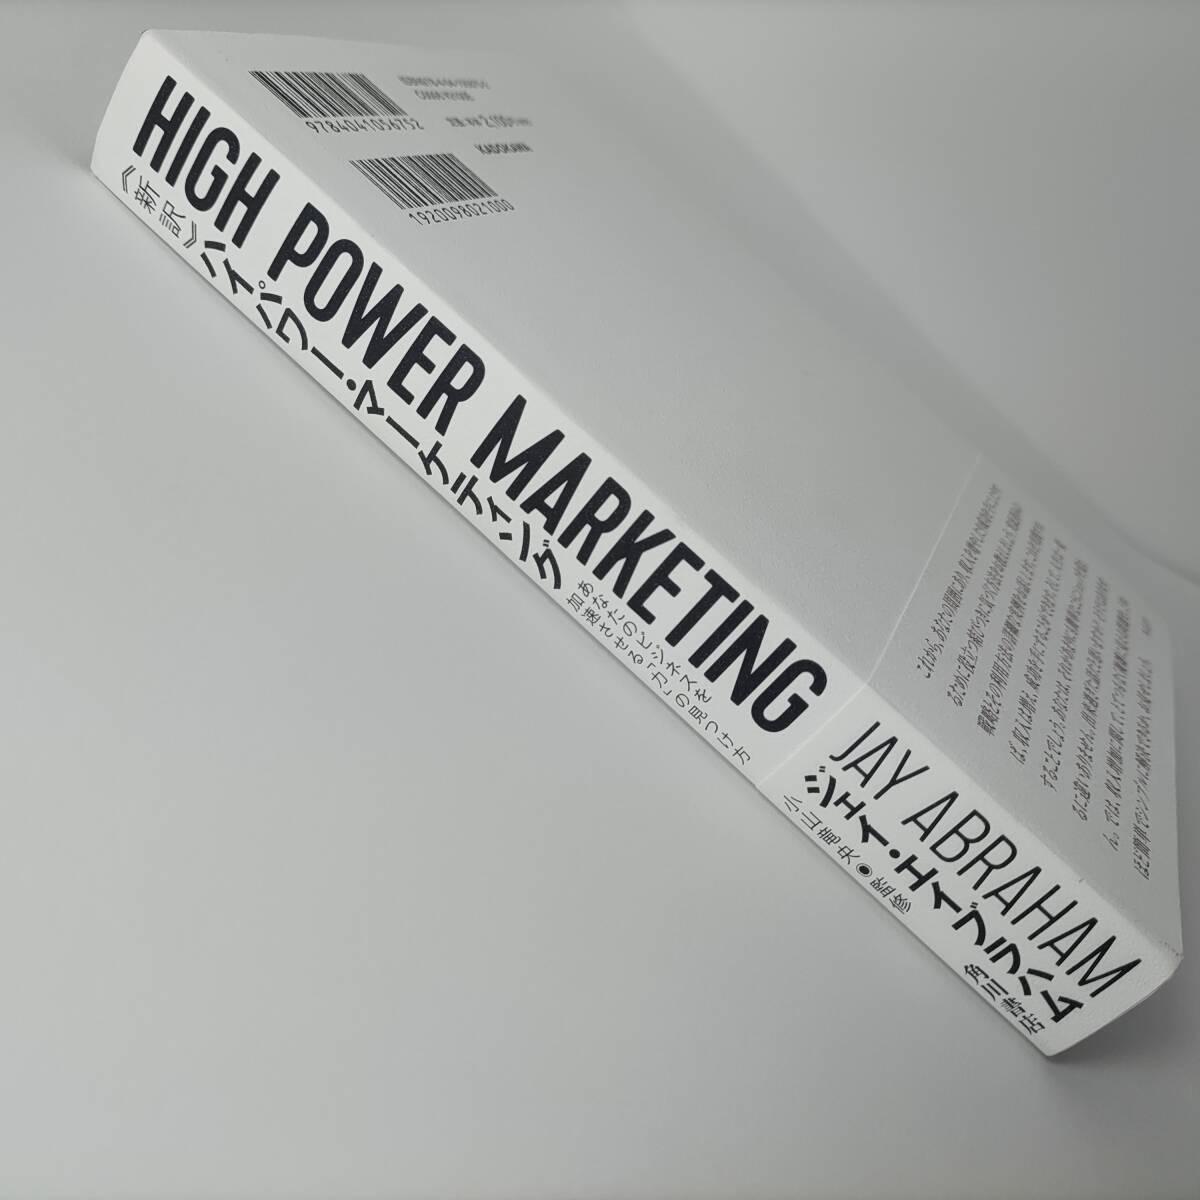 新訳 ハイパワー・マーケティング あなたのビジネスを加速させる「力」の見つけ方 ジェイ・エイブラハム (著) 小山竜央 (監修)の画像3